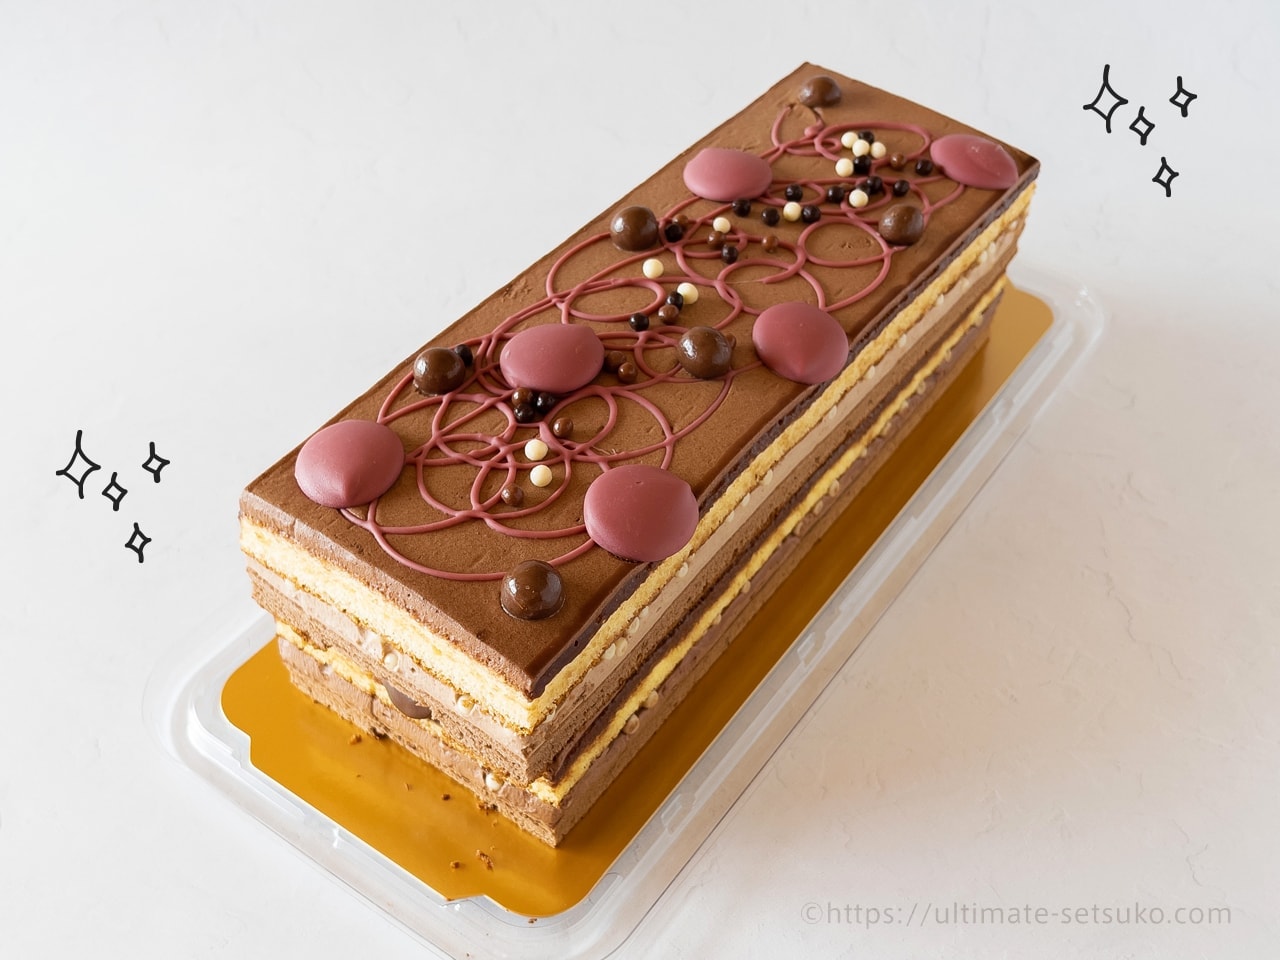 コストコの4種のチョコレートケーキが超おいしい ルビーチョコを使った贅沢な一品